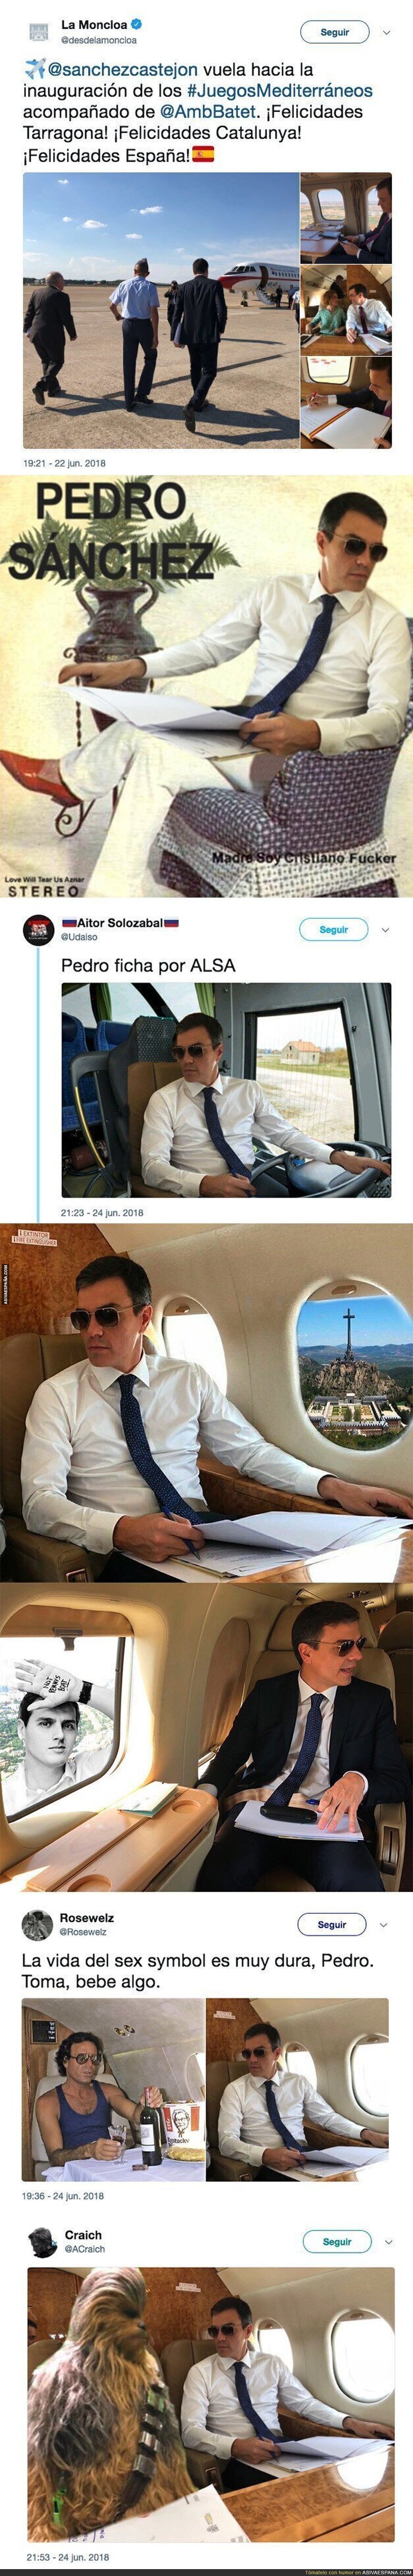 Pedro Sánchez se pone unas gafas de sol durante un vuelo e internet se llena de memes con él